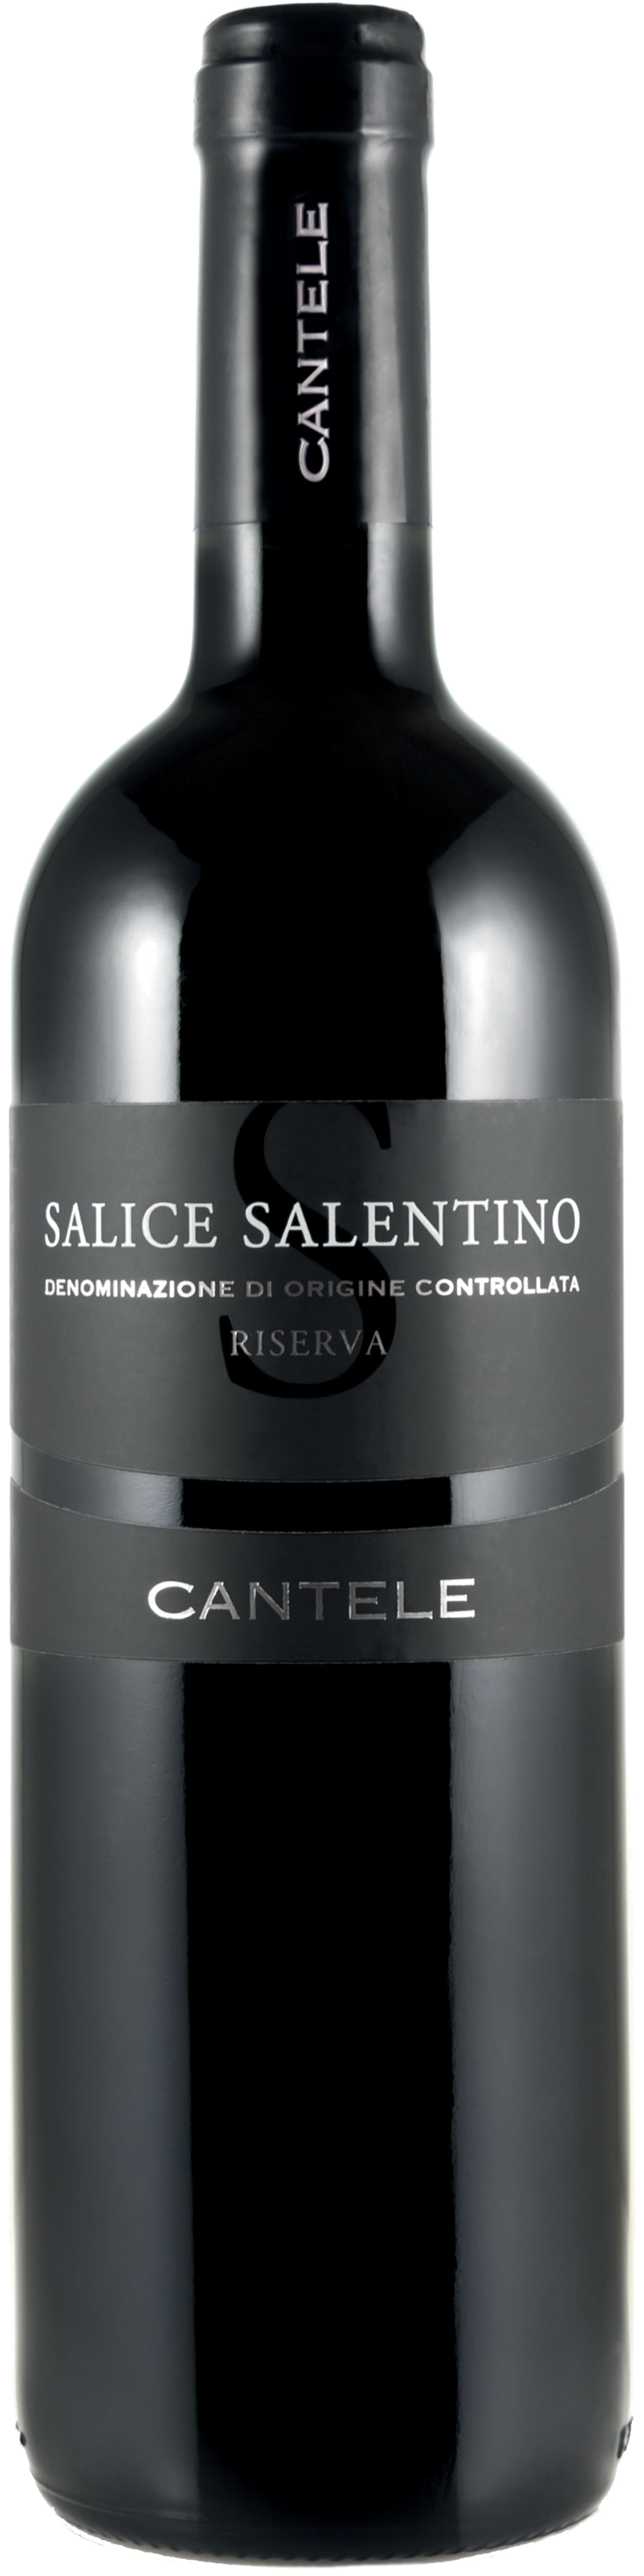 Bottle shot of 2010 Salice Salentino Rosso Riserva